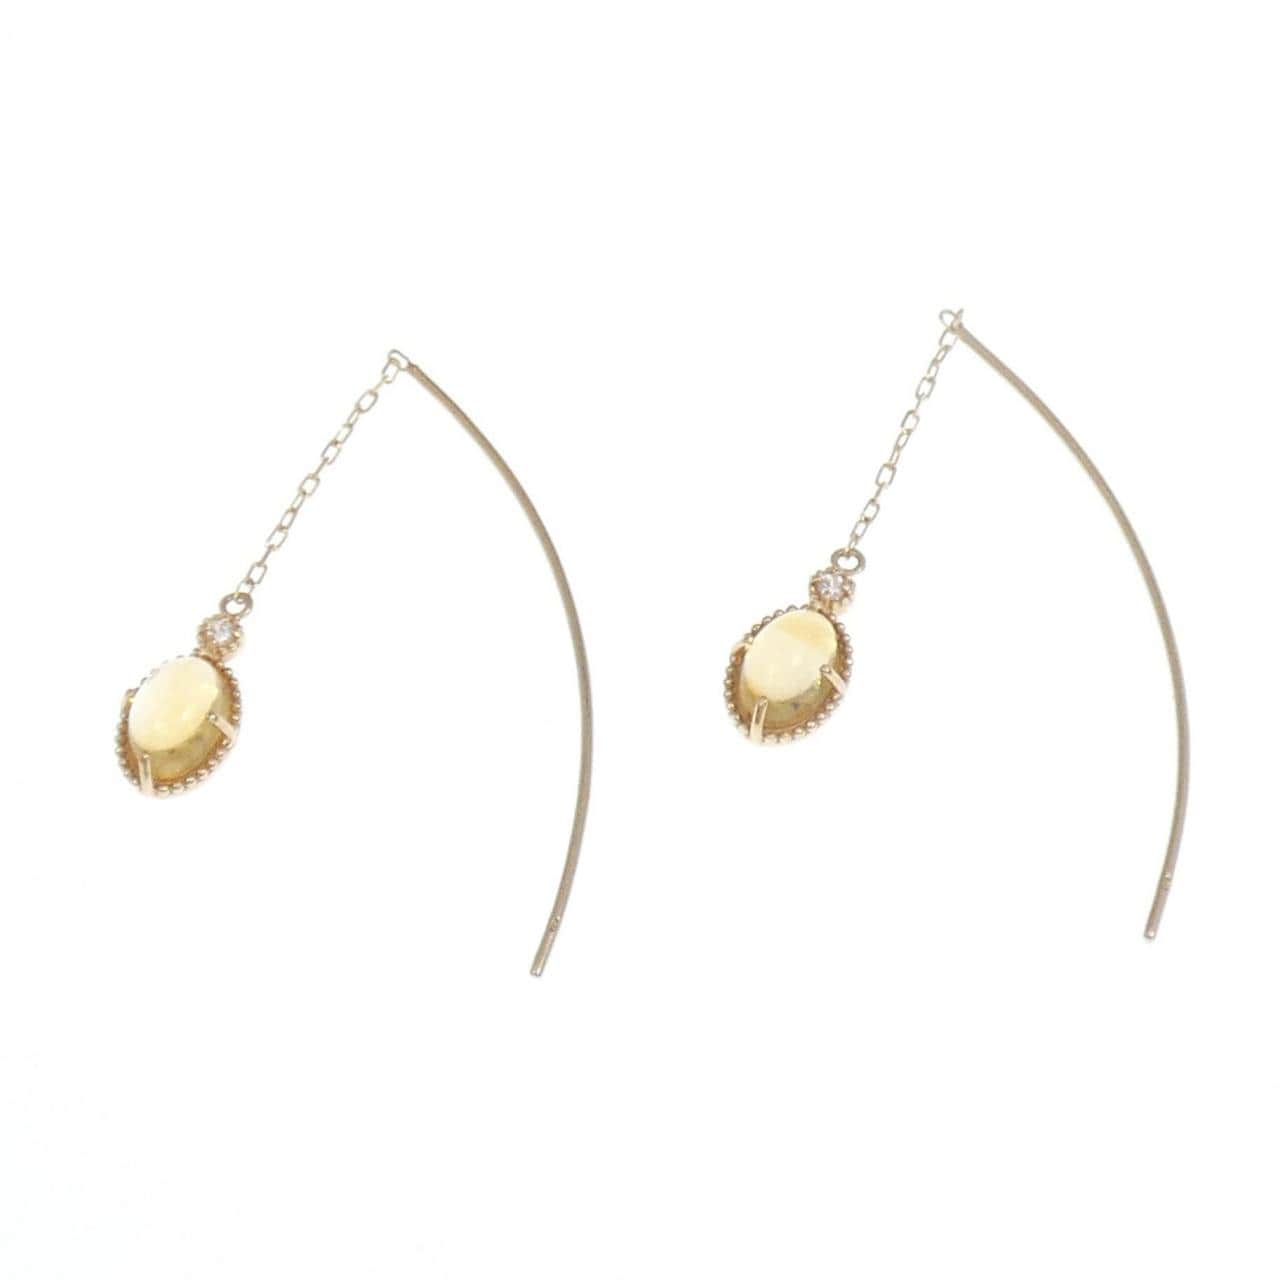 K10YG citrine earrings